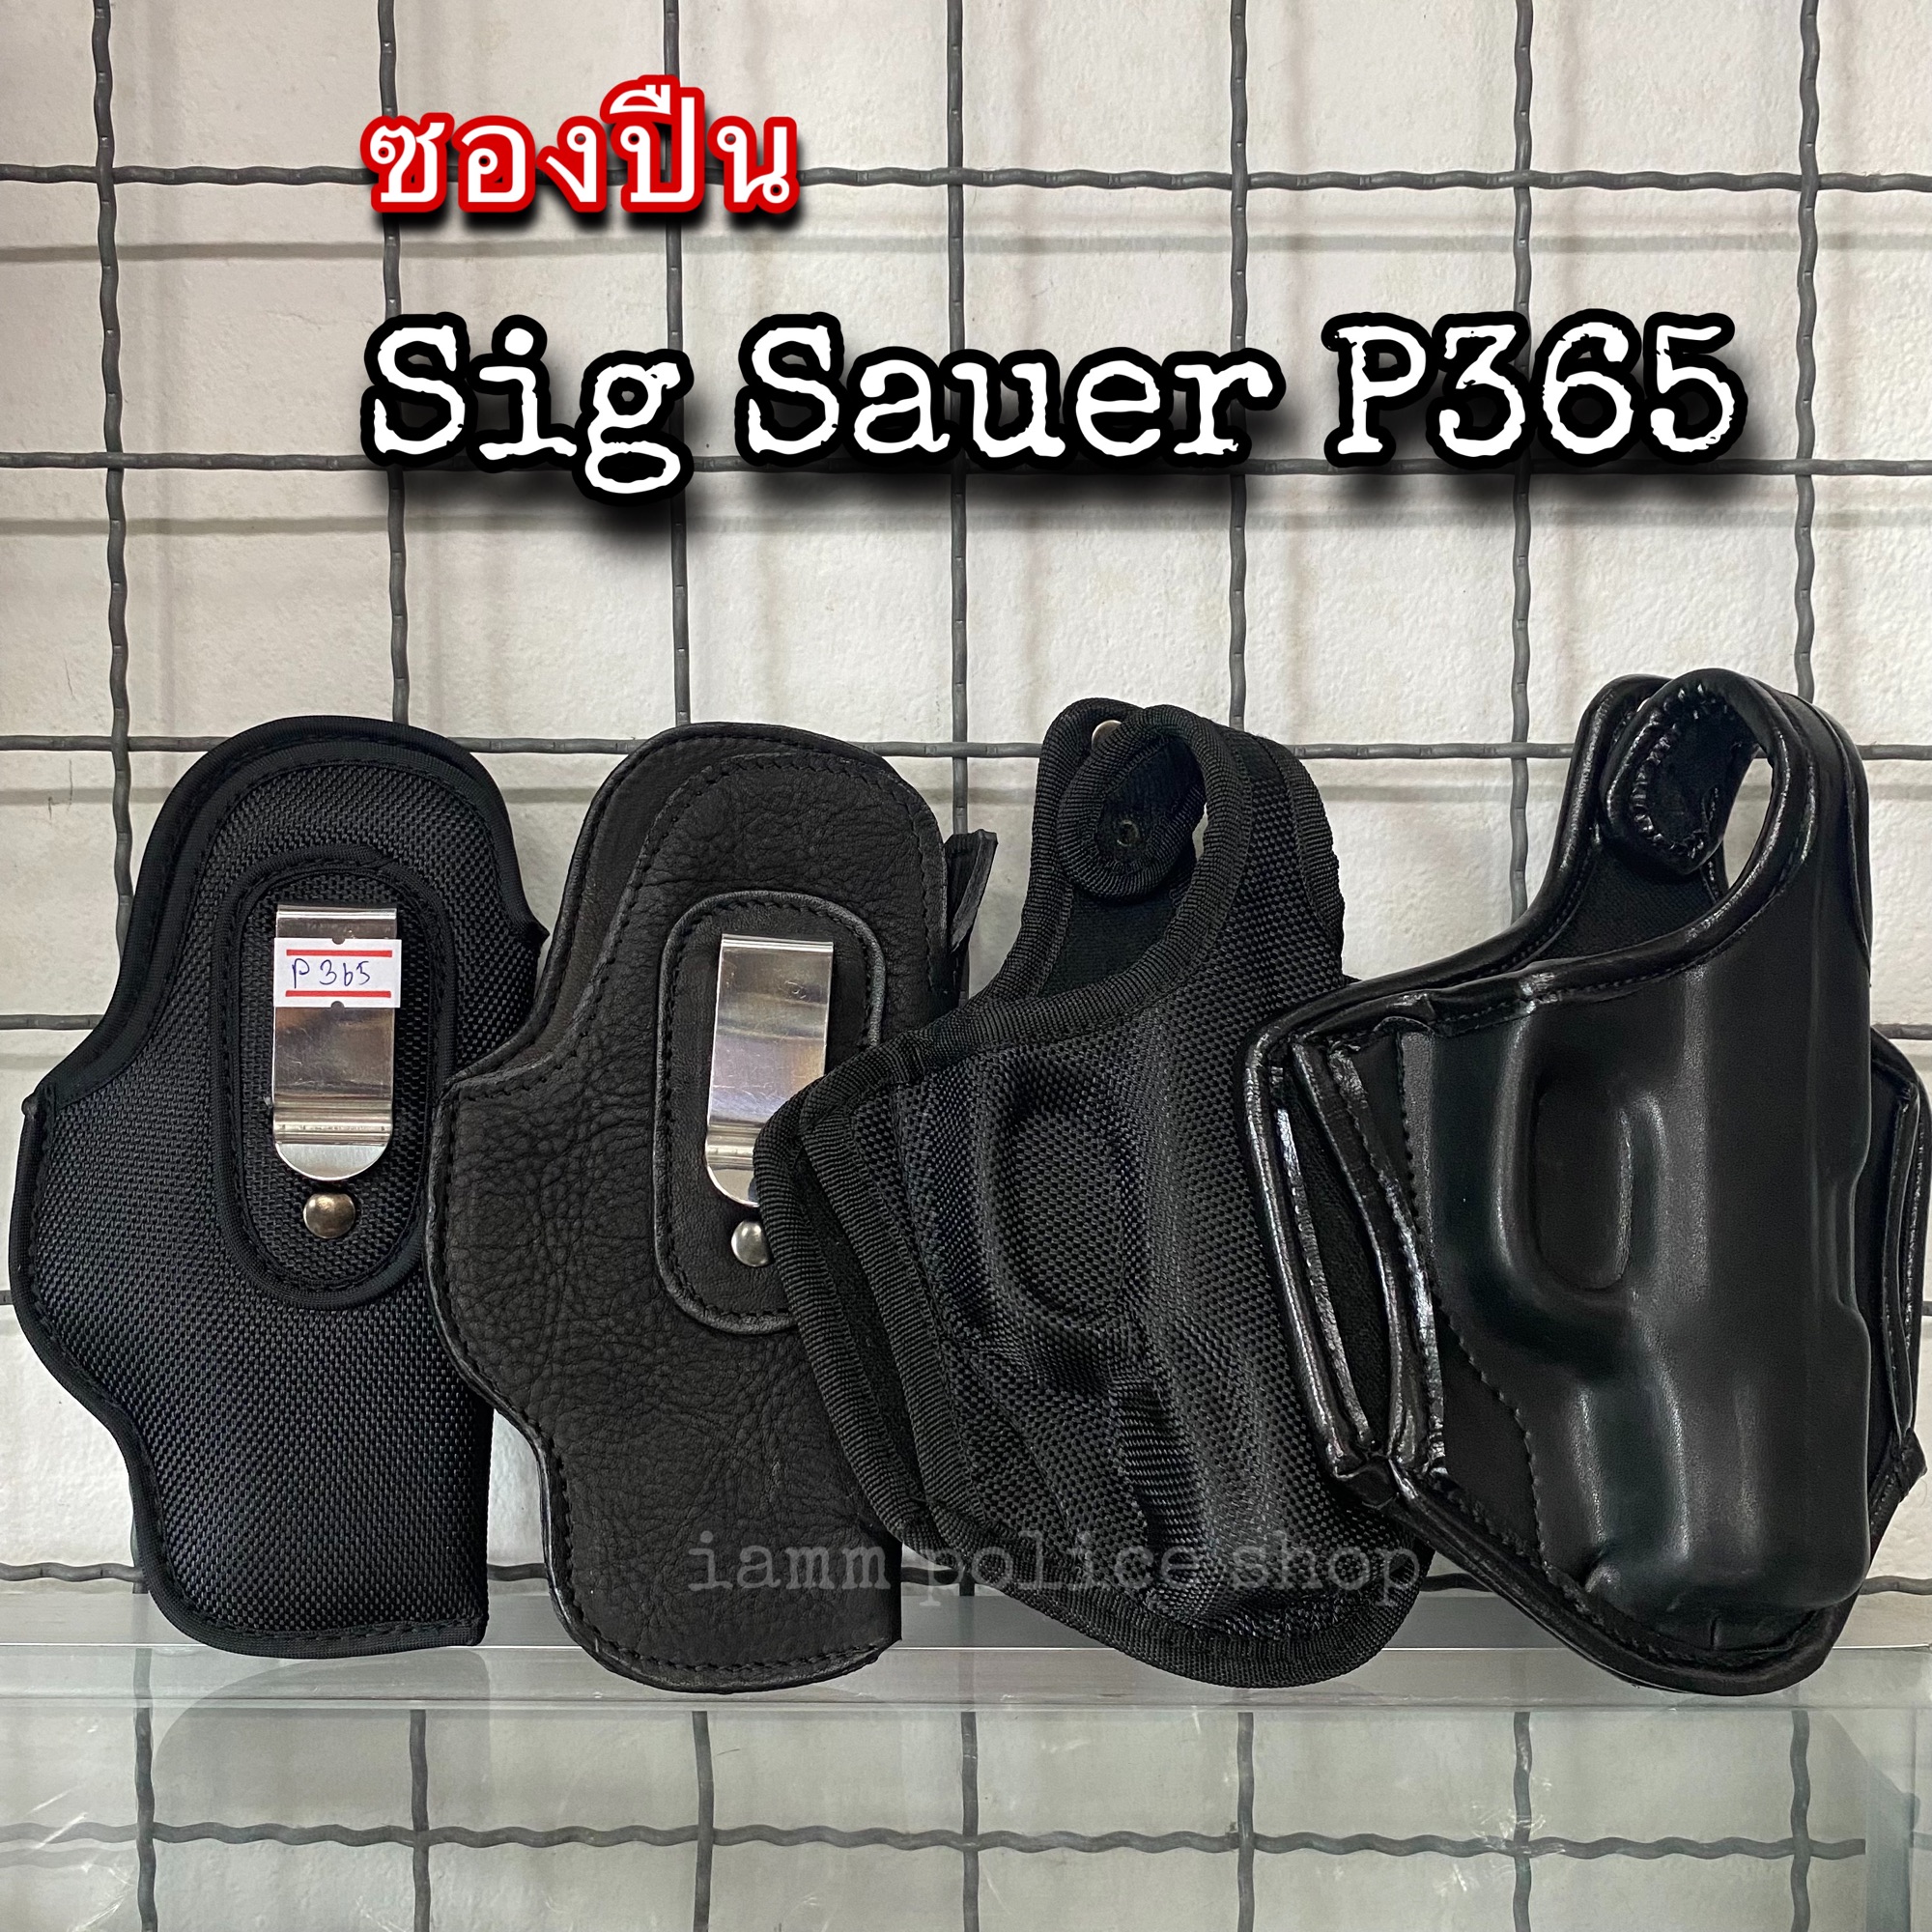 ซองปืนซิก Sig Sauer P365